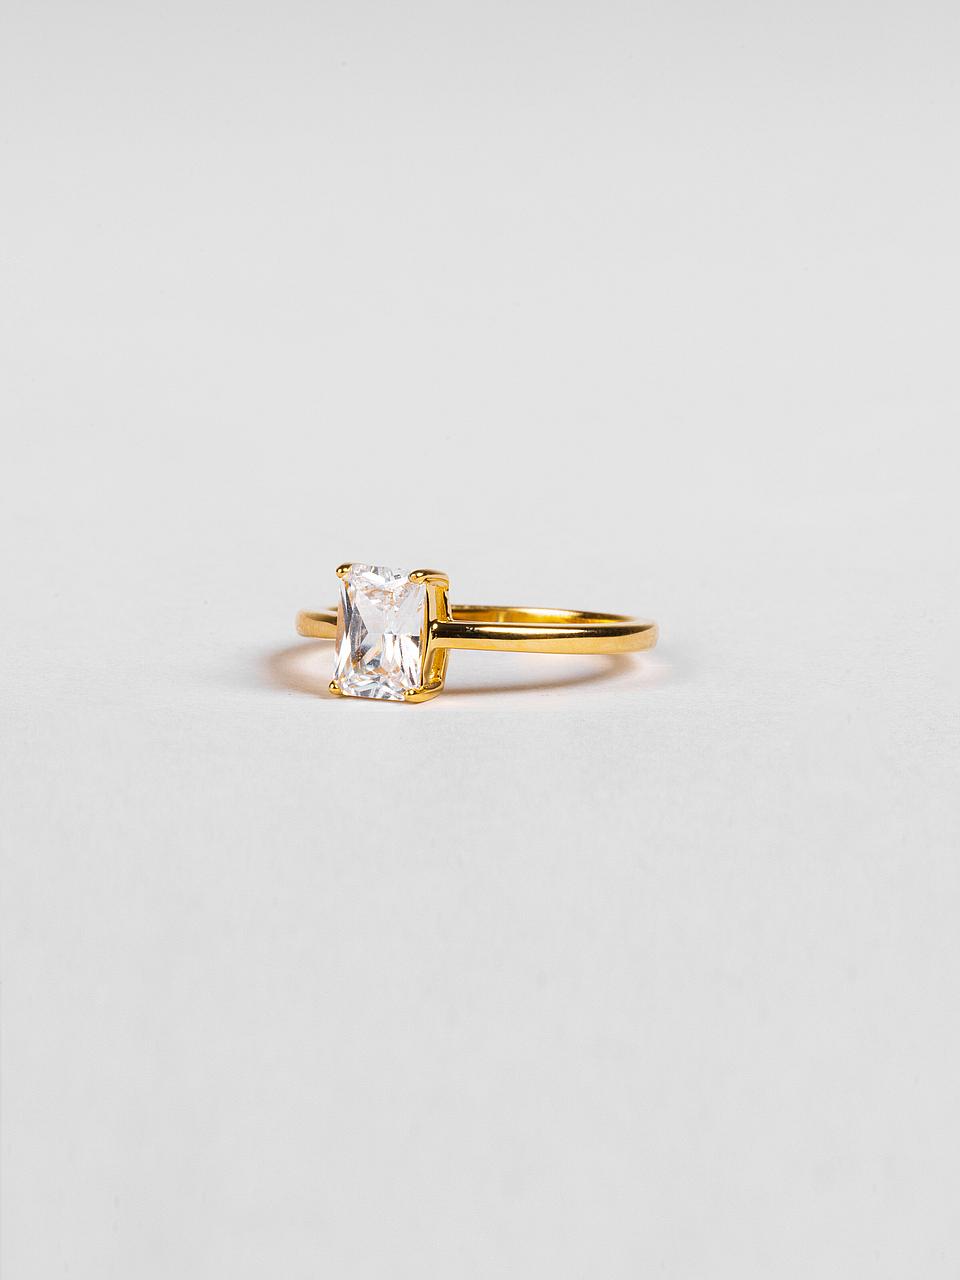 Ringe gold silber - Die besten Ringe gold silber verglichen